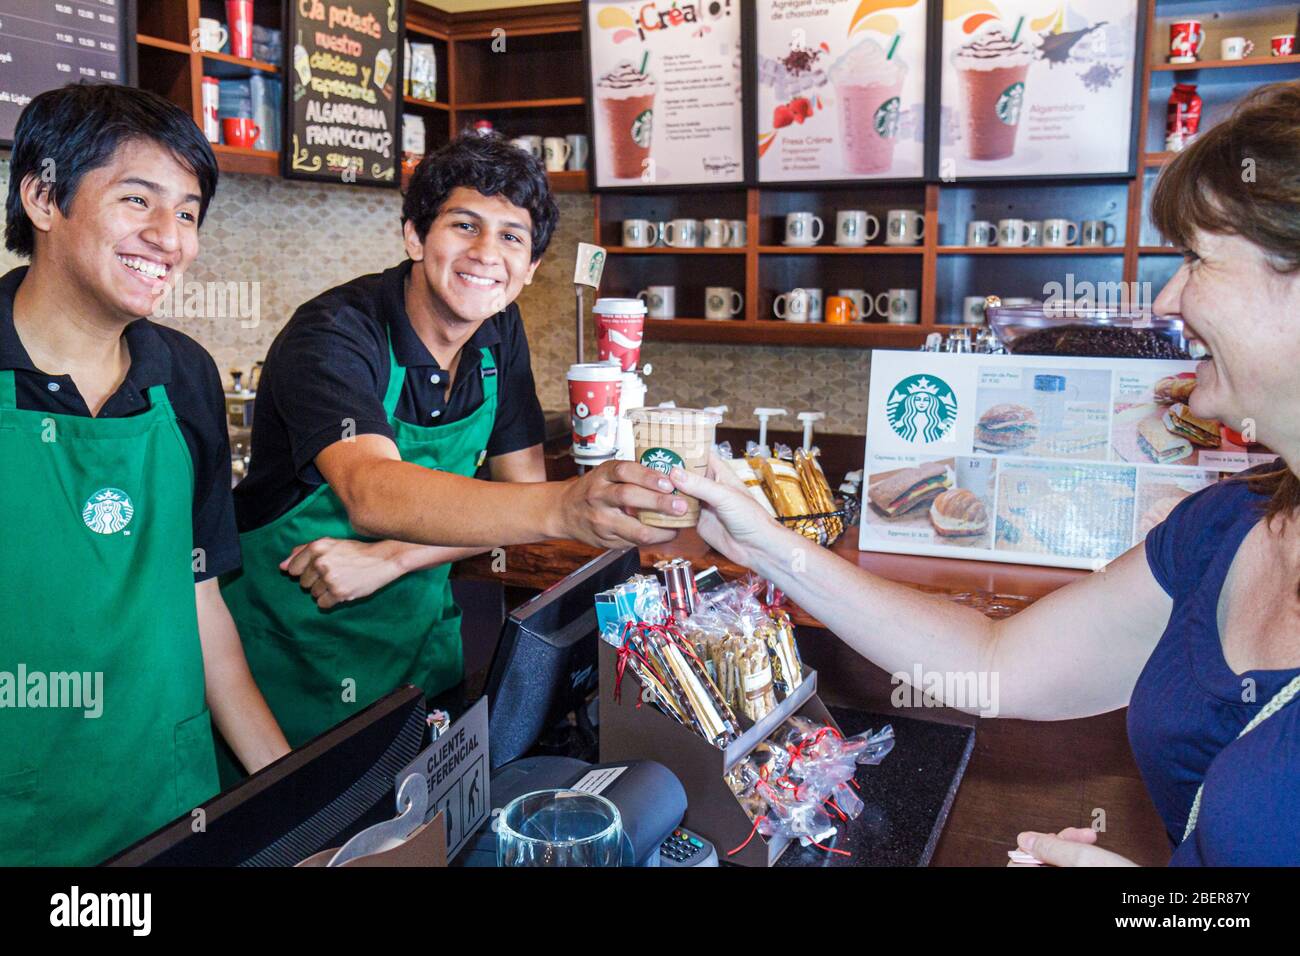 Lima Peru, Starbucks Coffee, intérieur Baristas baristas café, comptoir, service de caisse de tablier vert, tasse de latte, souriant hispanique garçons homme adolescents femme Banque D'Images